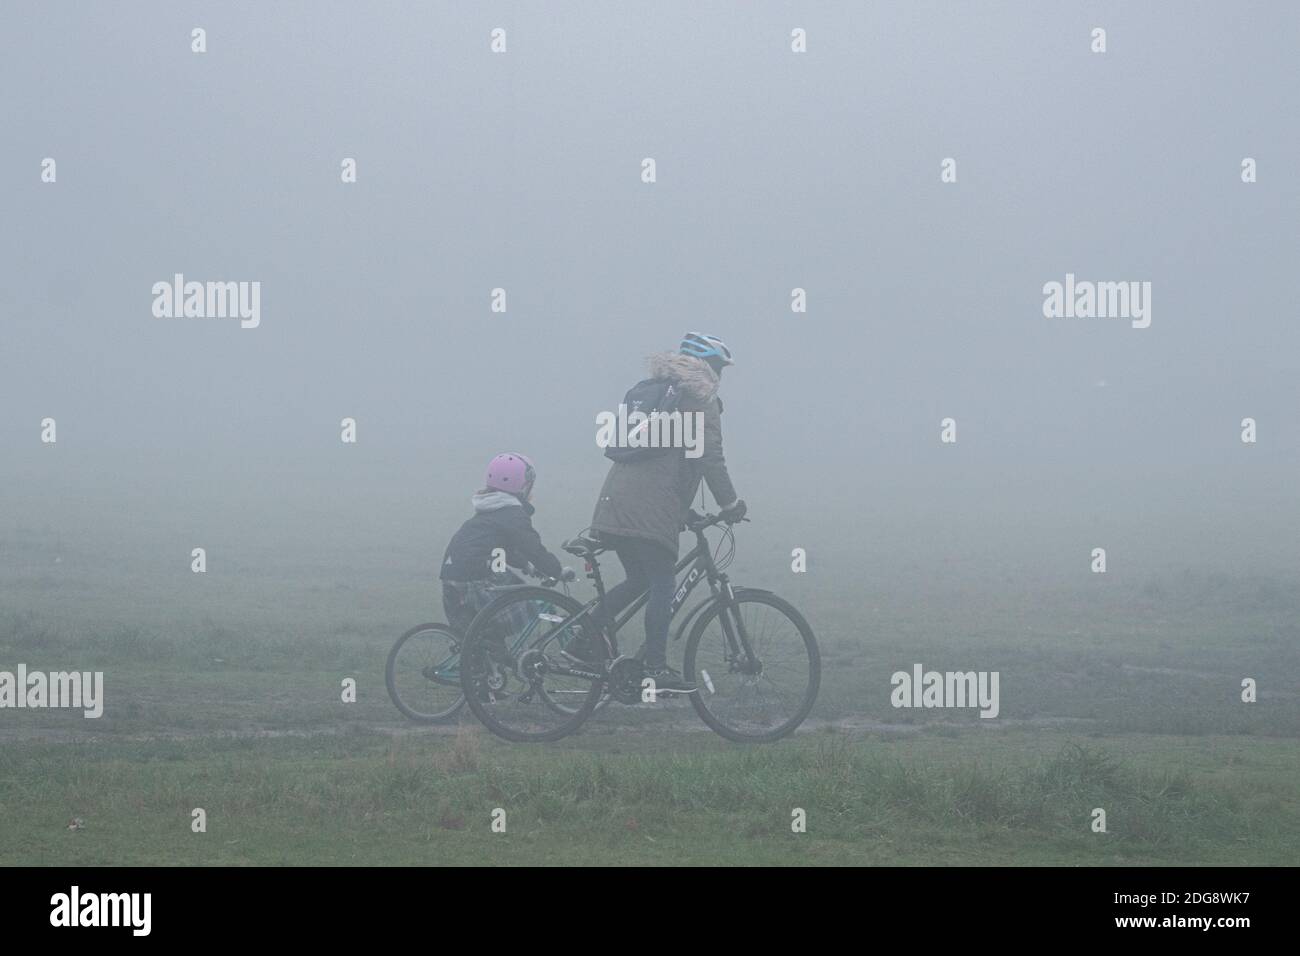 WIMBLEDON LONDON 8. Dezember 2020.Radfahrer fahren durch dichten frühen Morgennebel auf Wimbledon Common, während London zu eiskalten Temperaturen erwacht. Kredit: amer ghazzal/Alamy Live Nachrichten Stockfoto